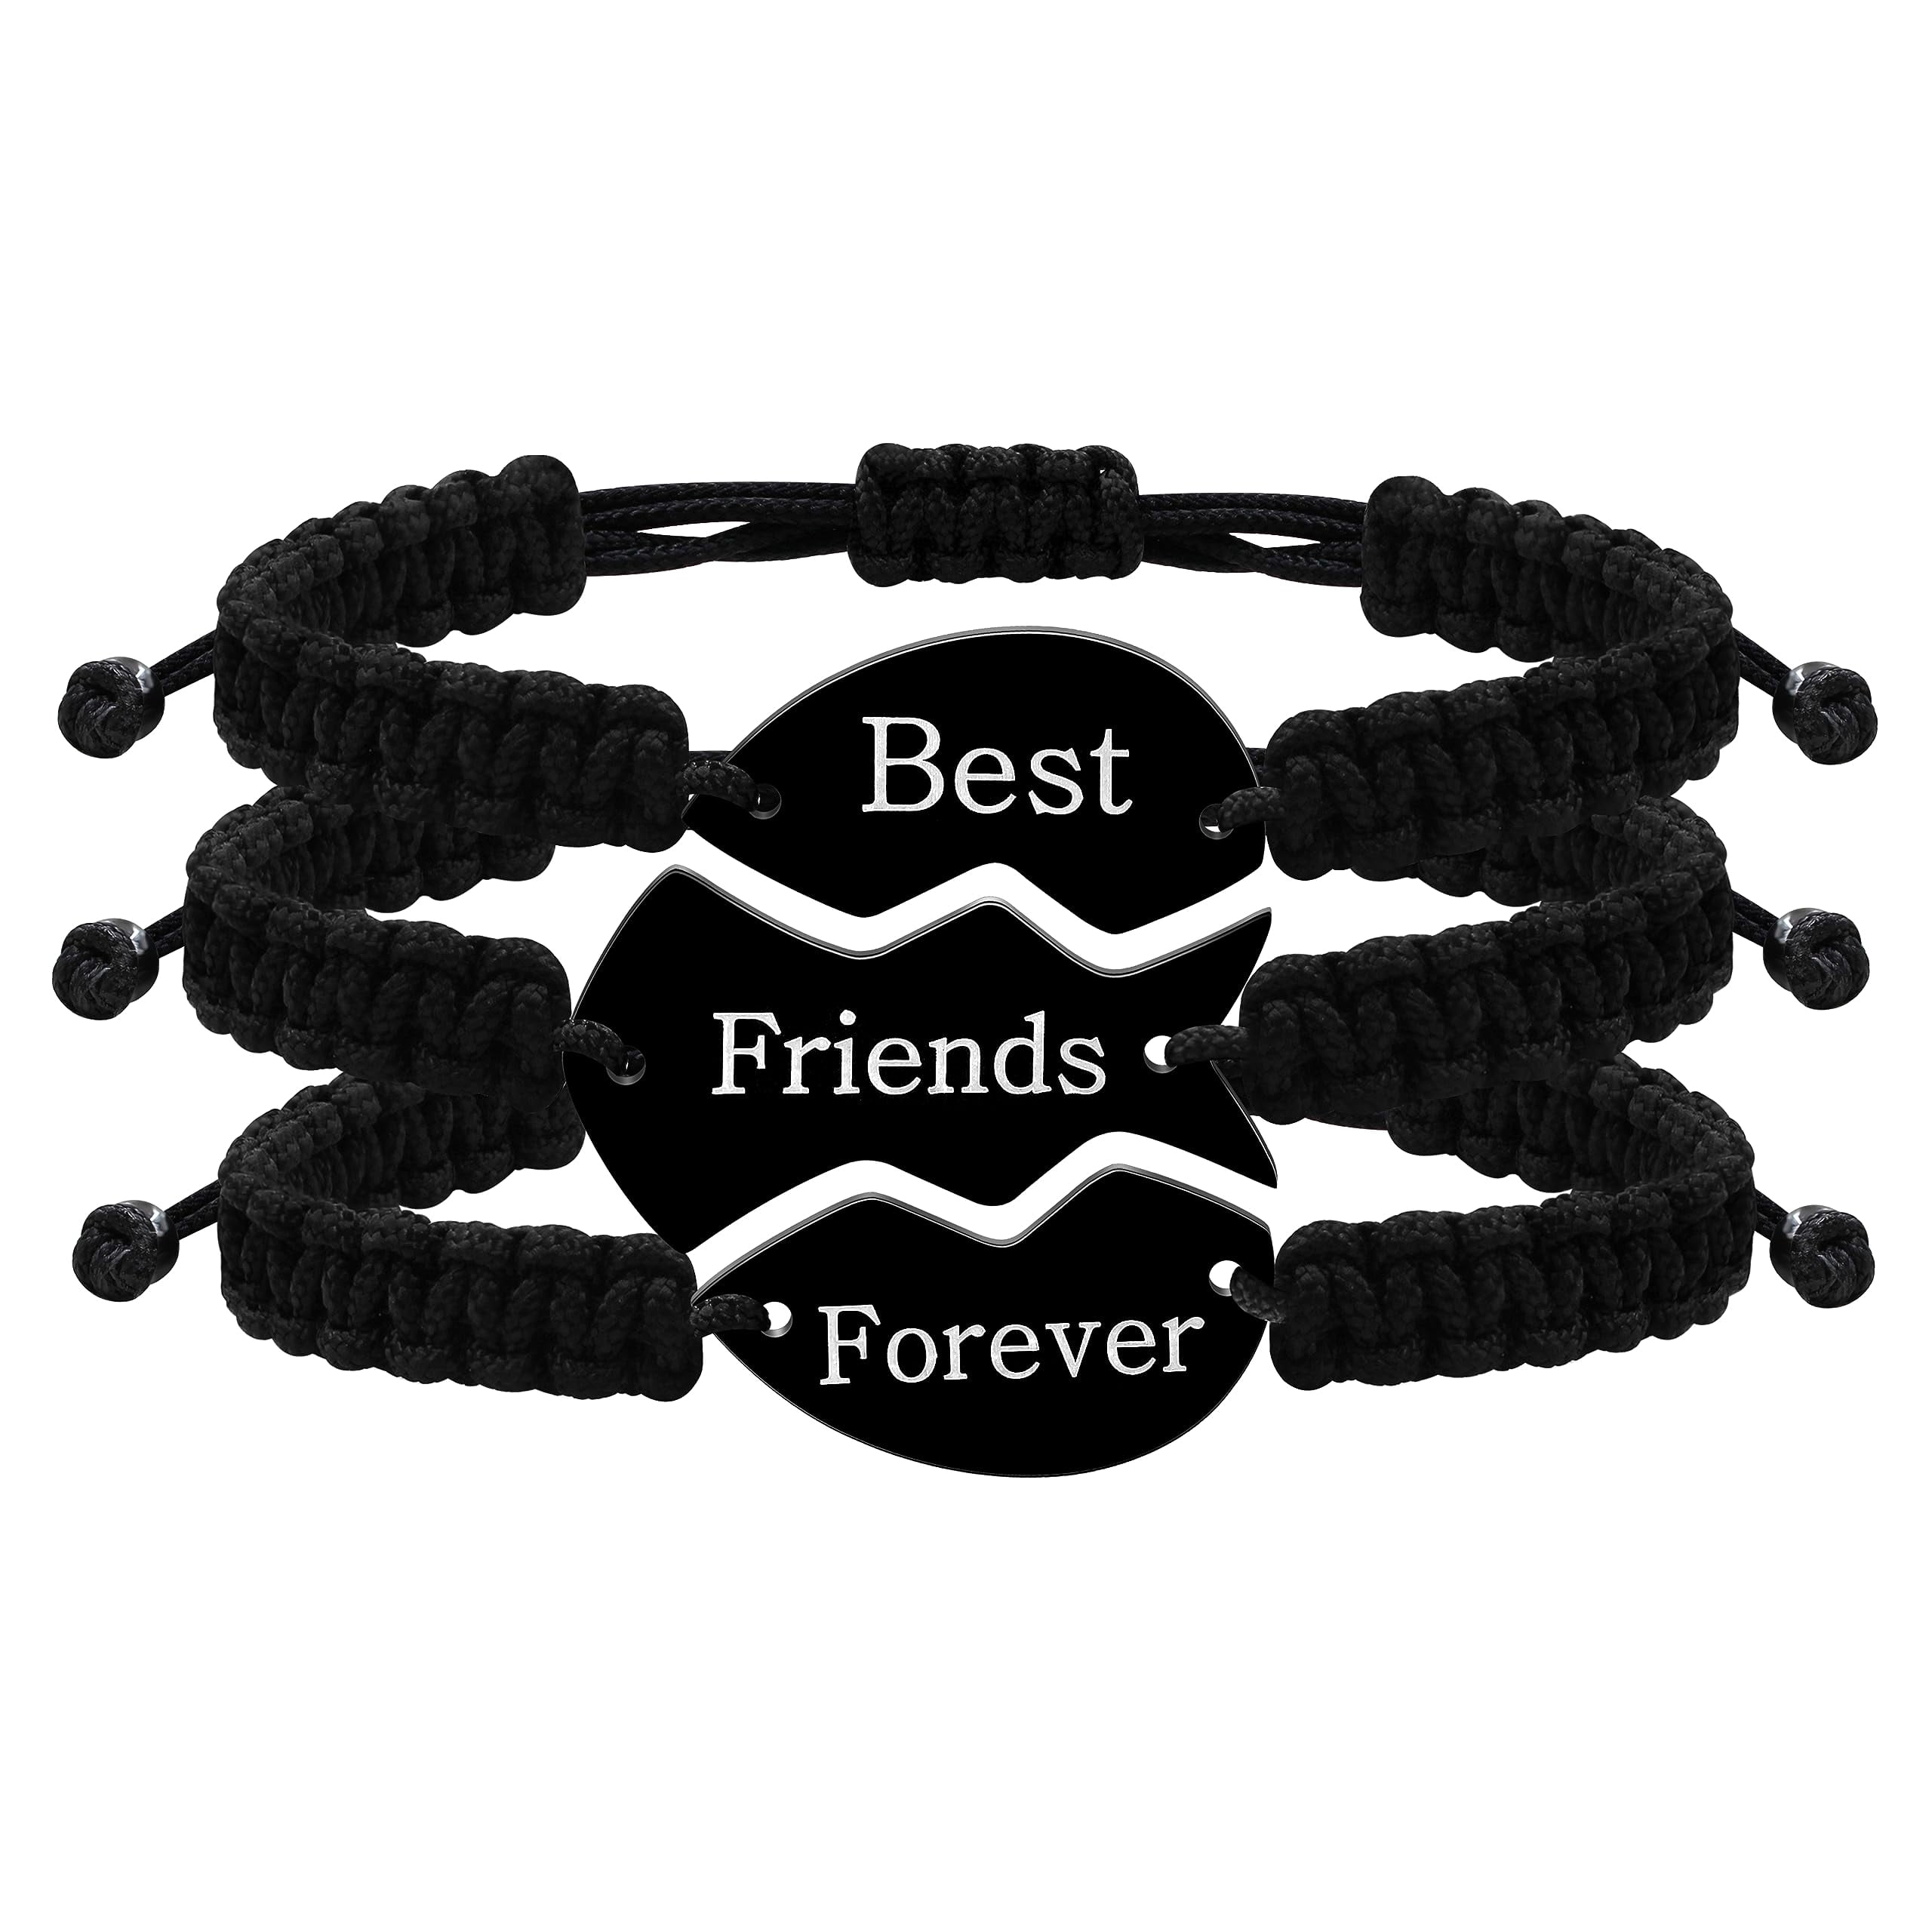 5 Beginner Friendly Friendship Bracelets Tutorial - Written By Kel